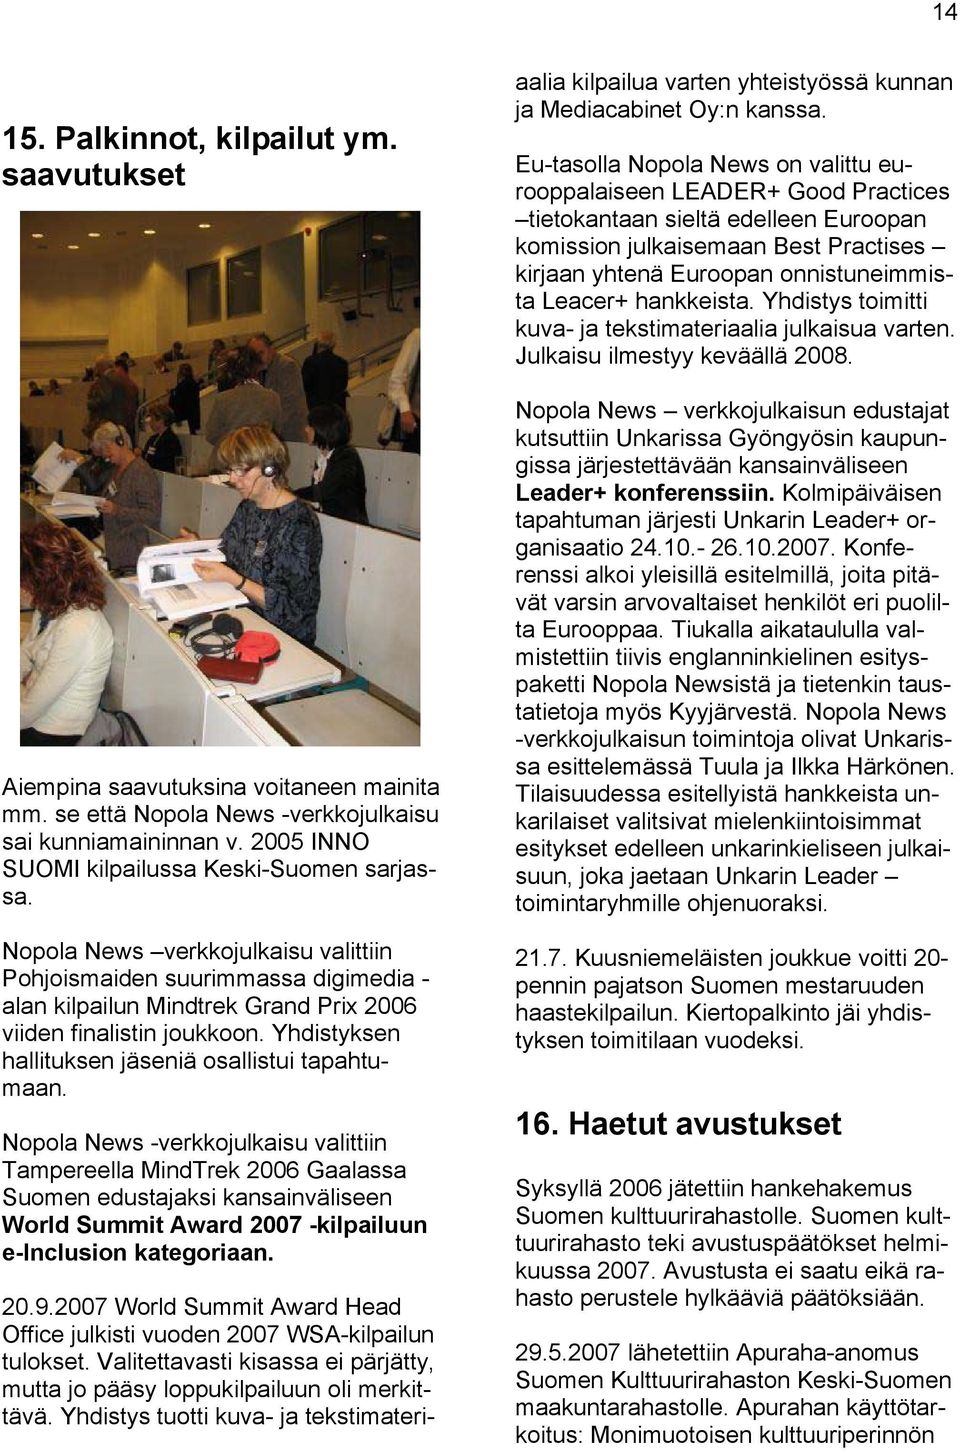 Nopola News -verkkojulkaisu valittiin Tampereella MindTrek 2006 Gaalassa Suomen edustajaksi kansainväliseen World Summit Award 2007 -kilpailuun e-inclusion kategoriaan. 20.9.